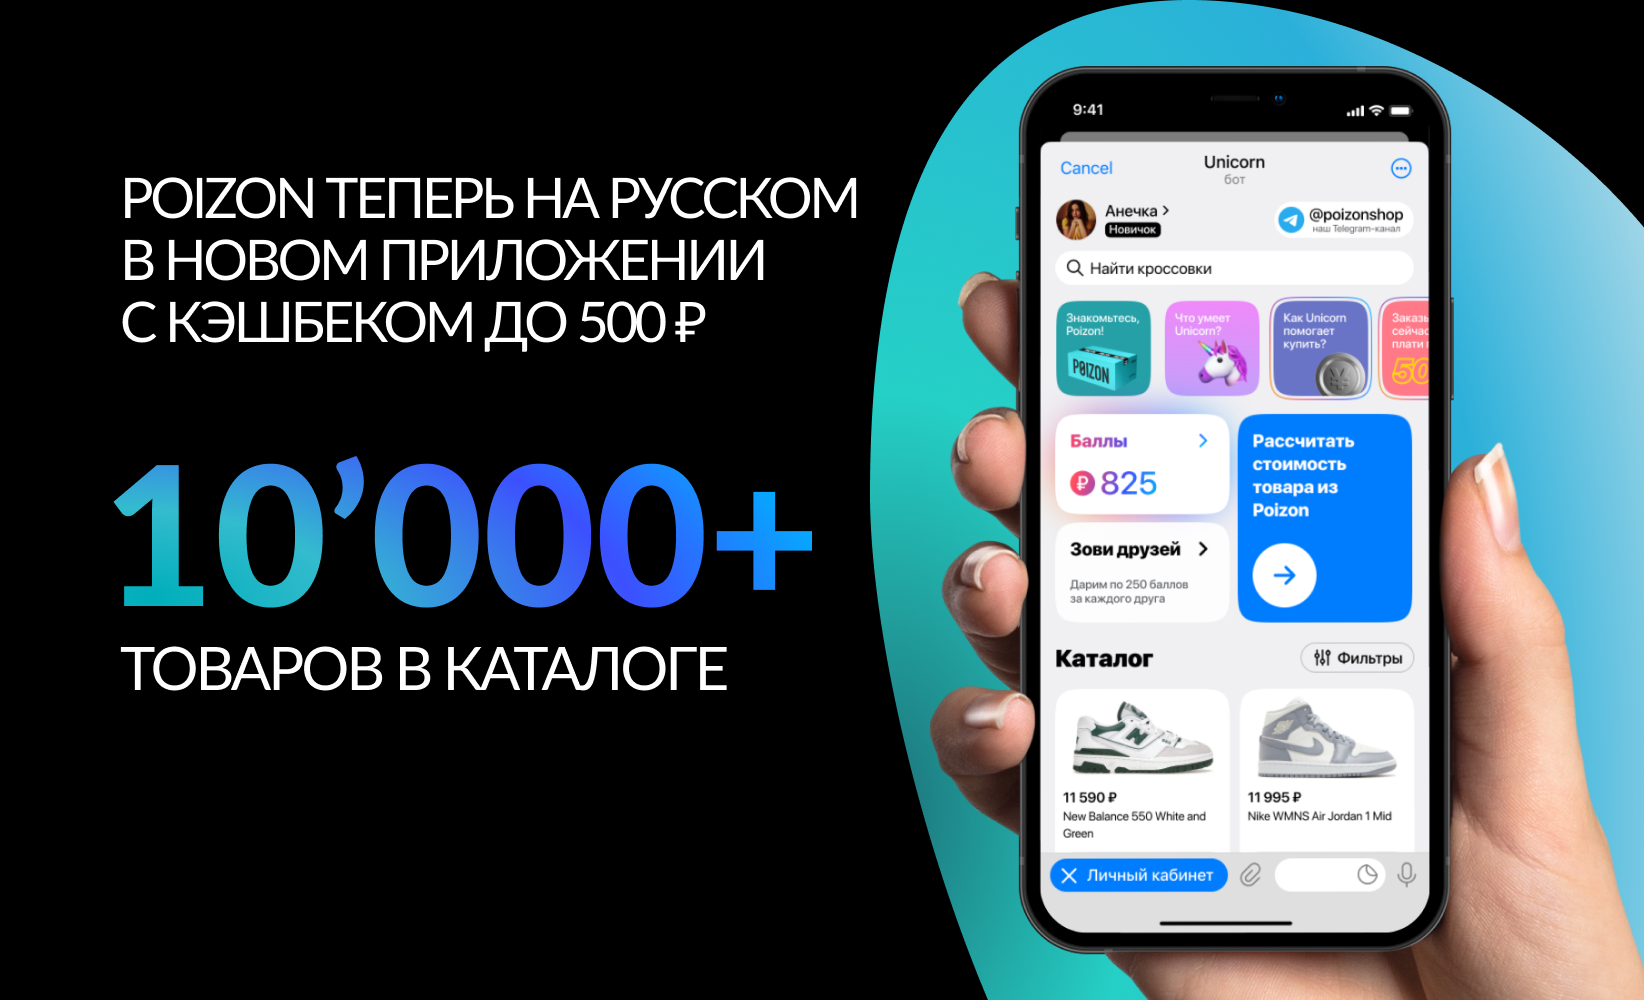 Приложение телеграмм скачать бесплатно на телефон русском языке как фото 91